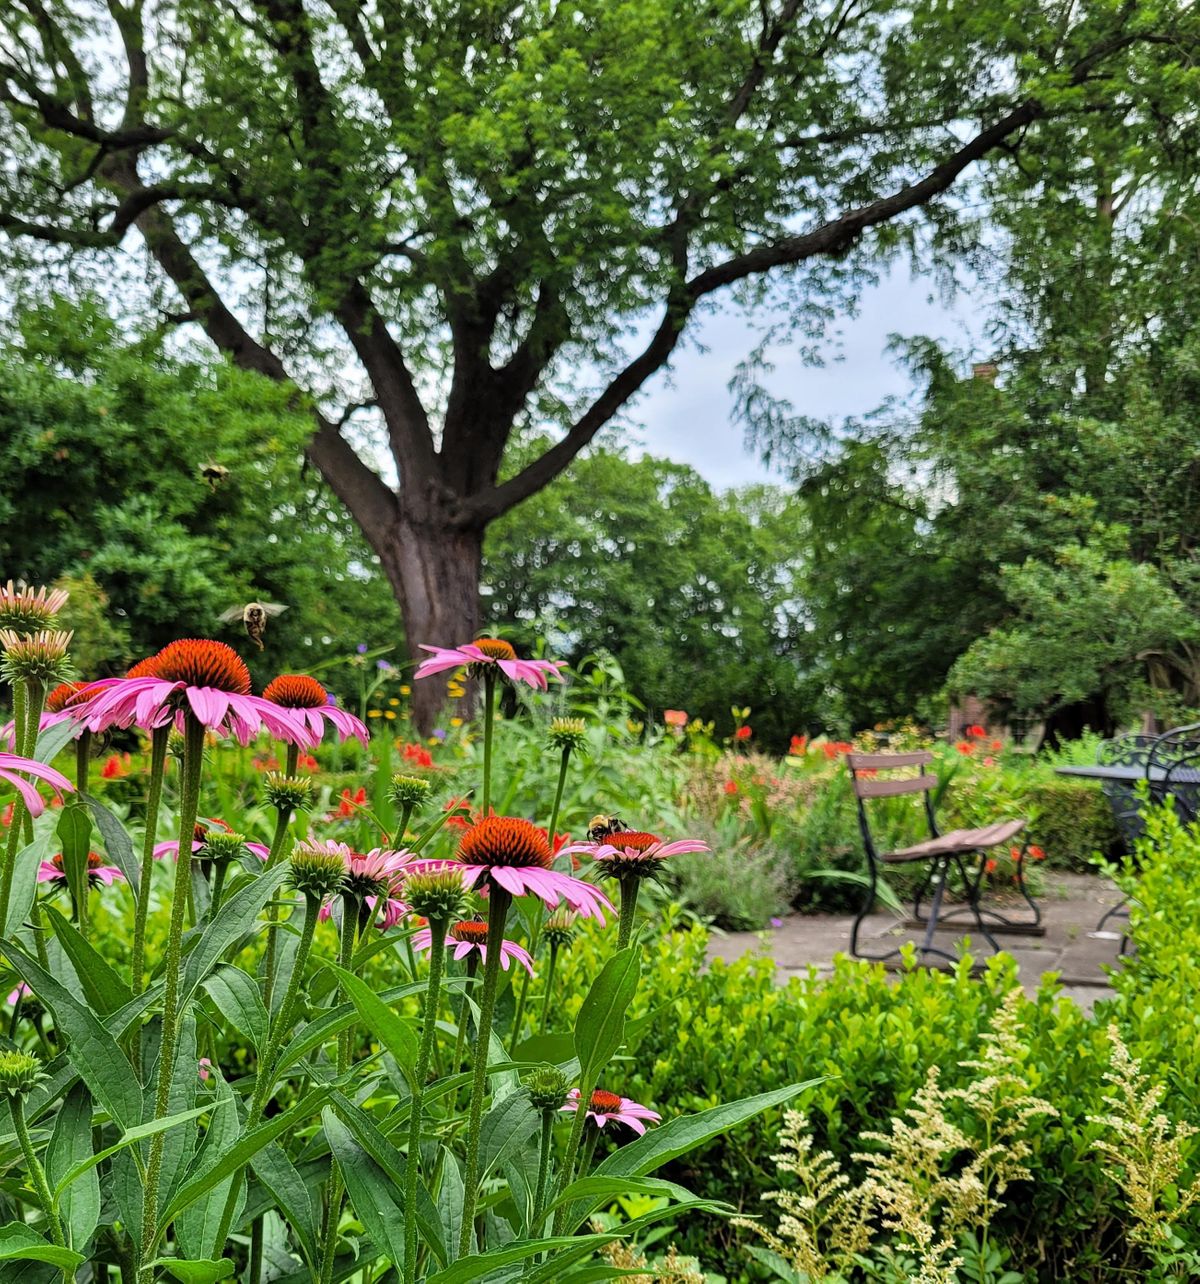 Ten Broeck Mansion Gardening & Community Clean-Up Days